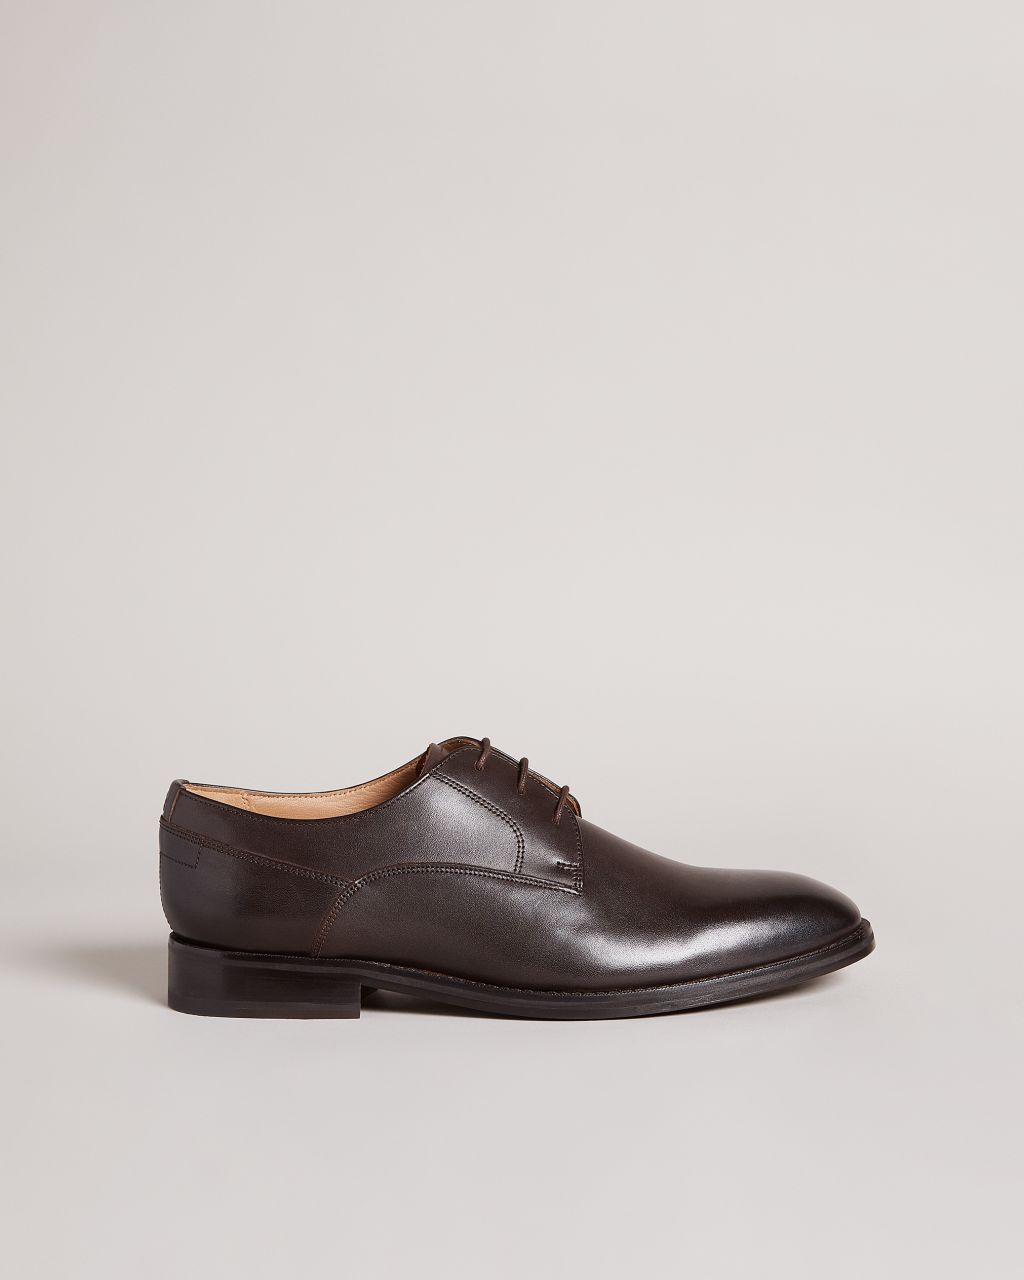 Ted Baker Men's Formal Leather Derby Shoes in Brown, Kampten